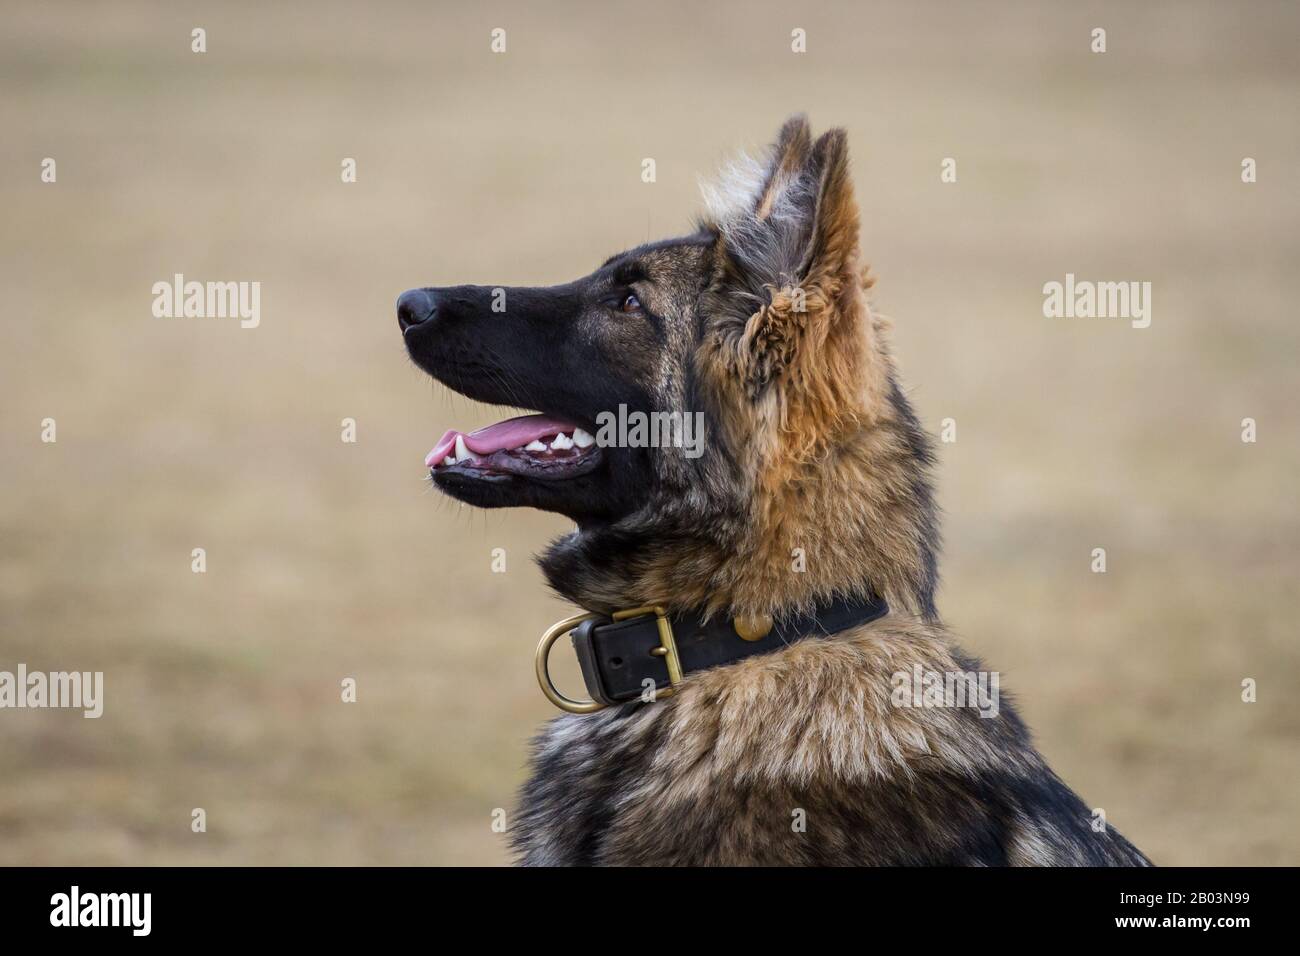 Retrato de un perro pastor alemán de pelo largo (perro alsaciano) que mira centrado al propietario, esperando más órdenes Foto de stock